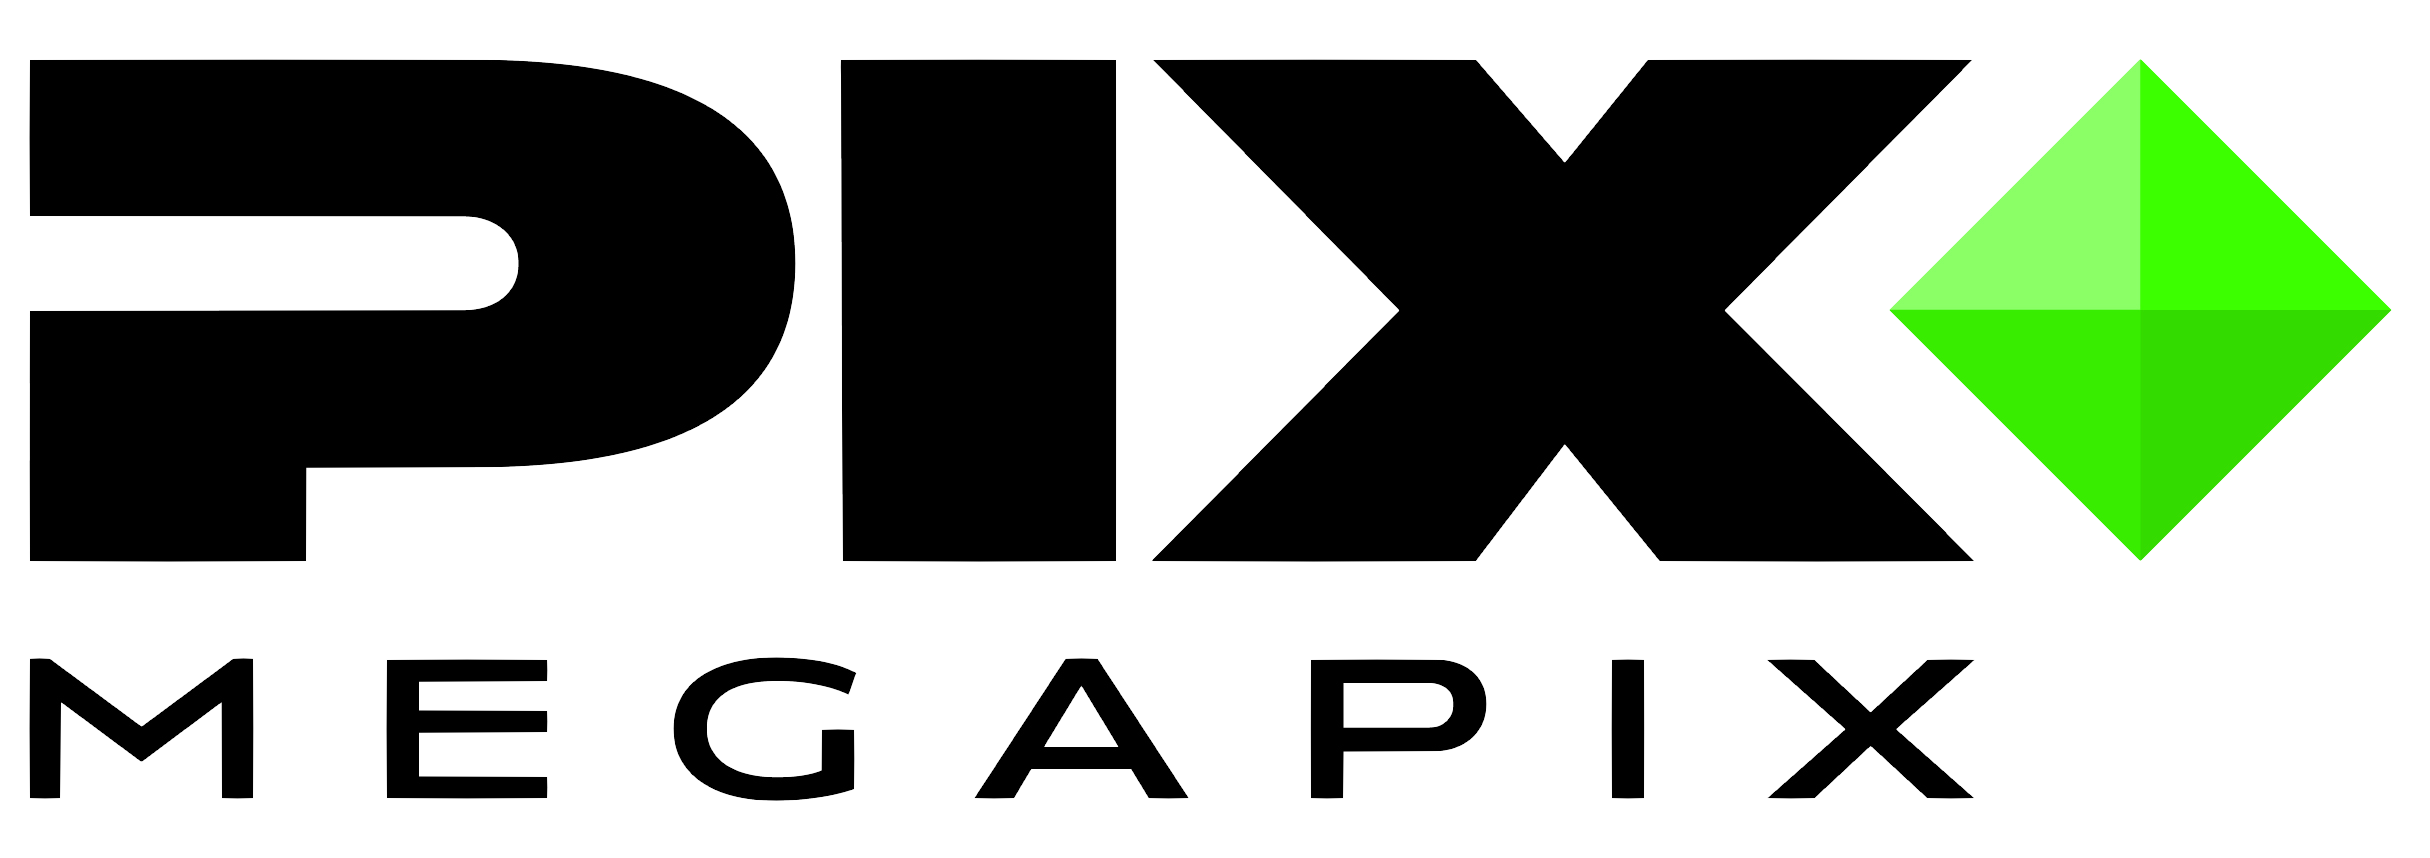 Megapix Logo Wallpaper